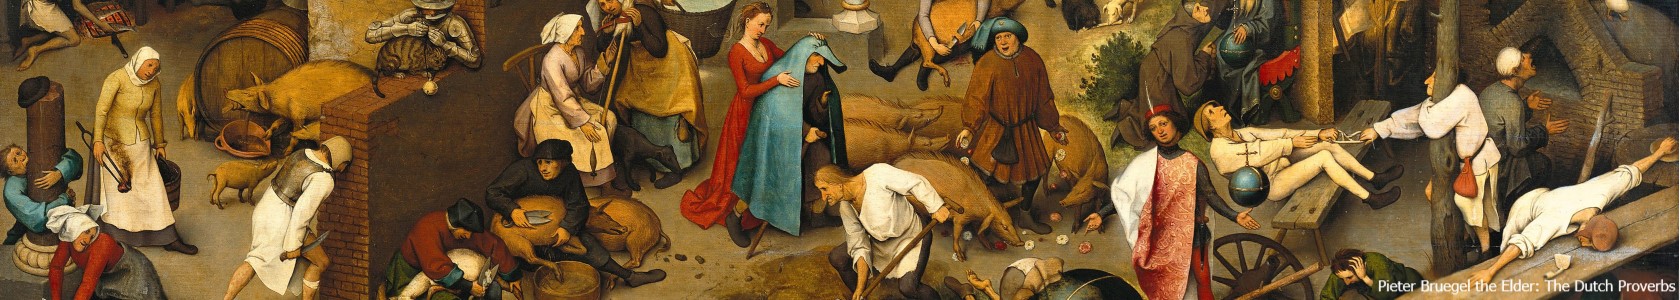 The Dutch Proverbs by Pieter Bruegel the Elder